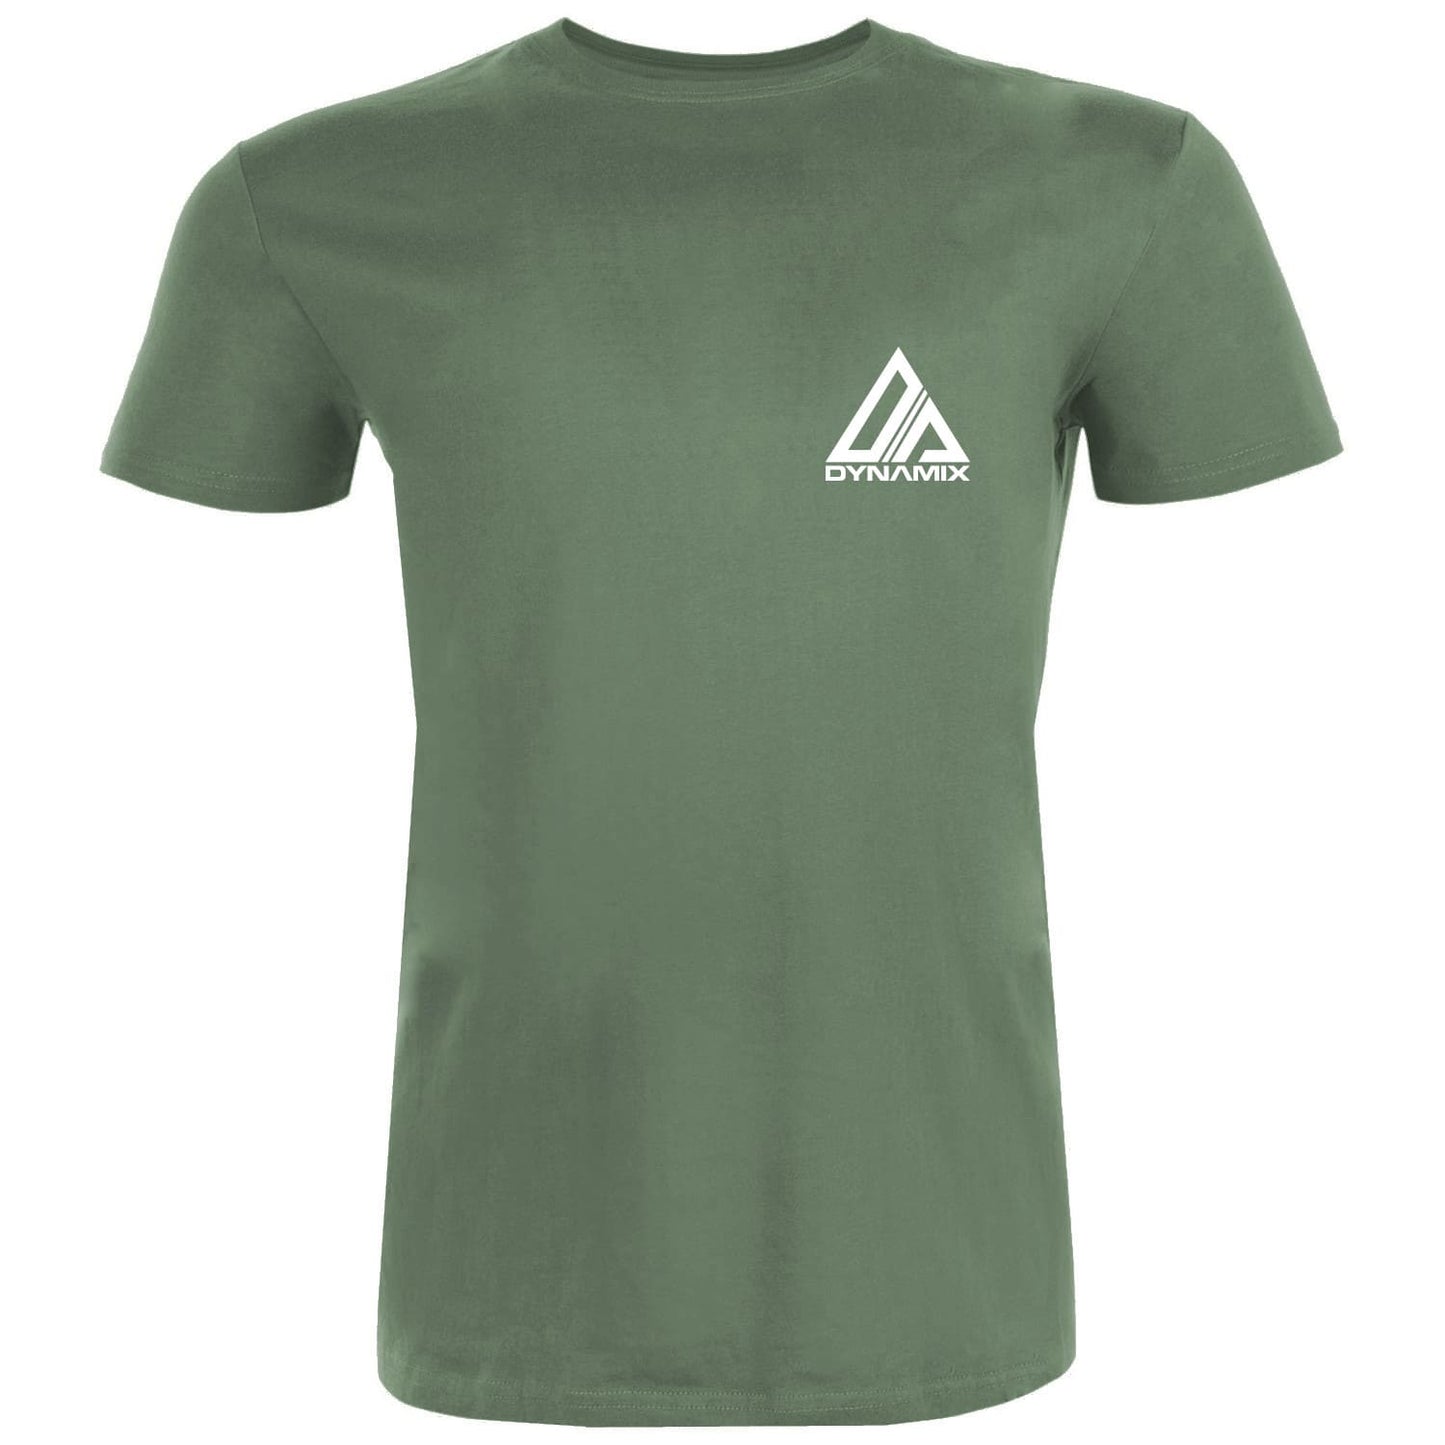 Dynamix Athletics T-Shirt Allsports - Military